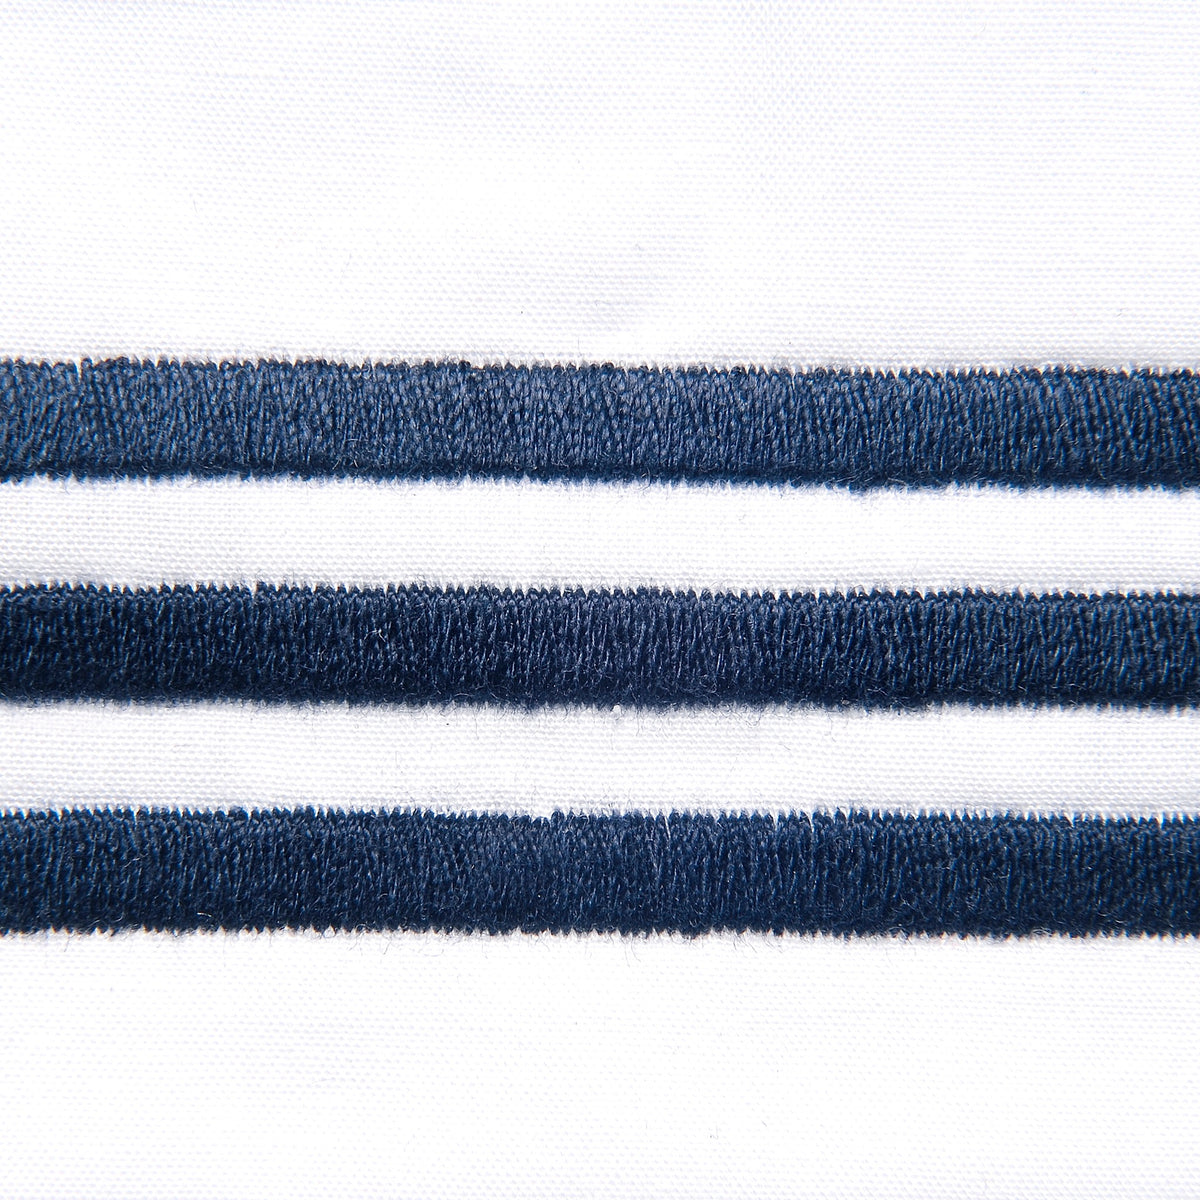 Fabric Closeup of Signoria Platinum Percale Bedding in White/Dark Blue Color